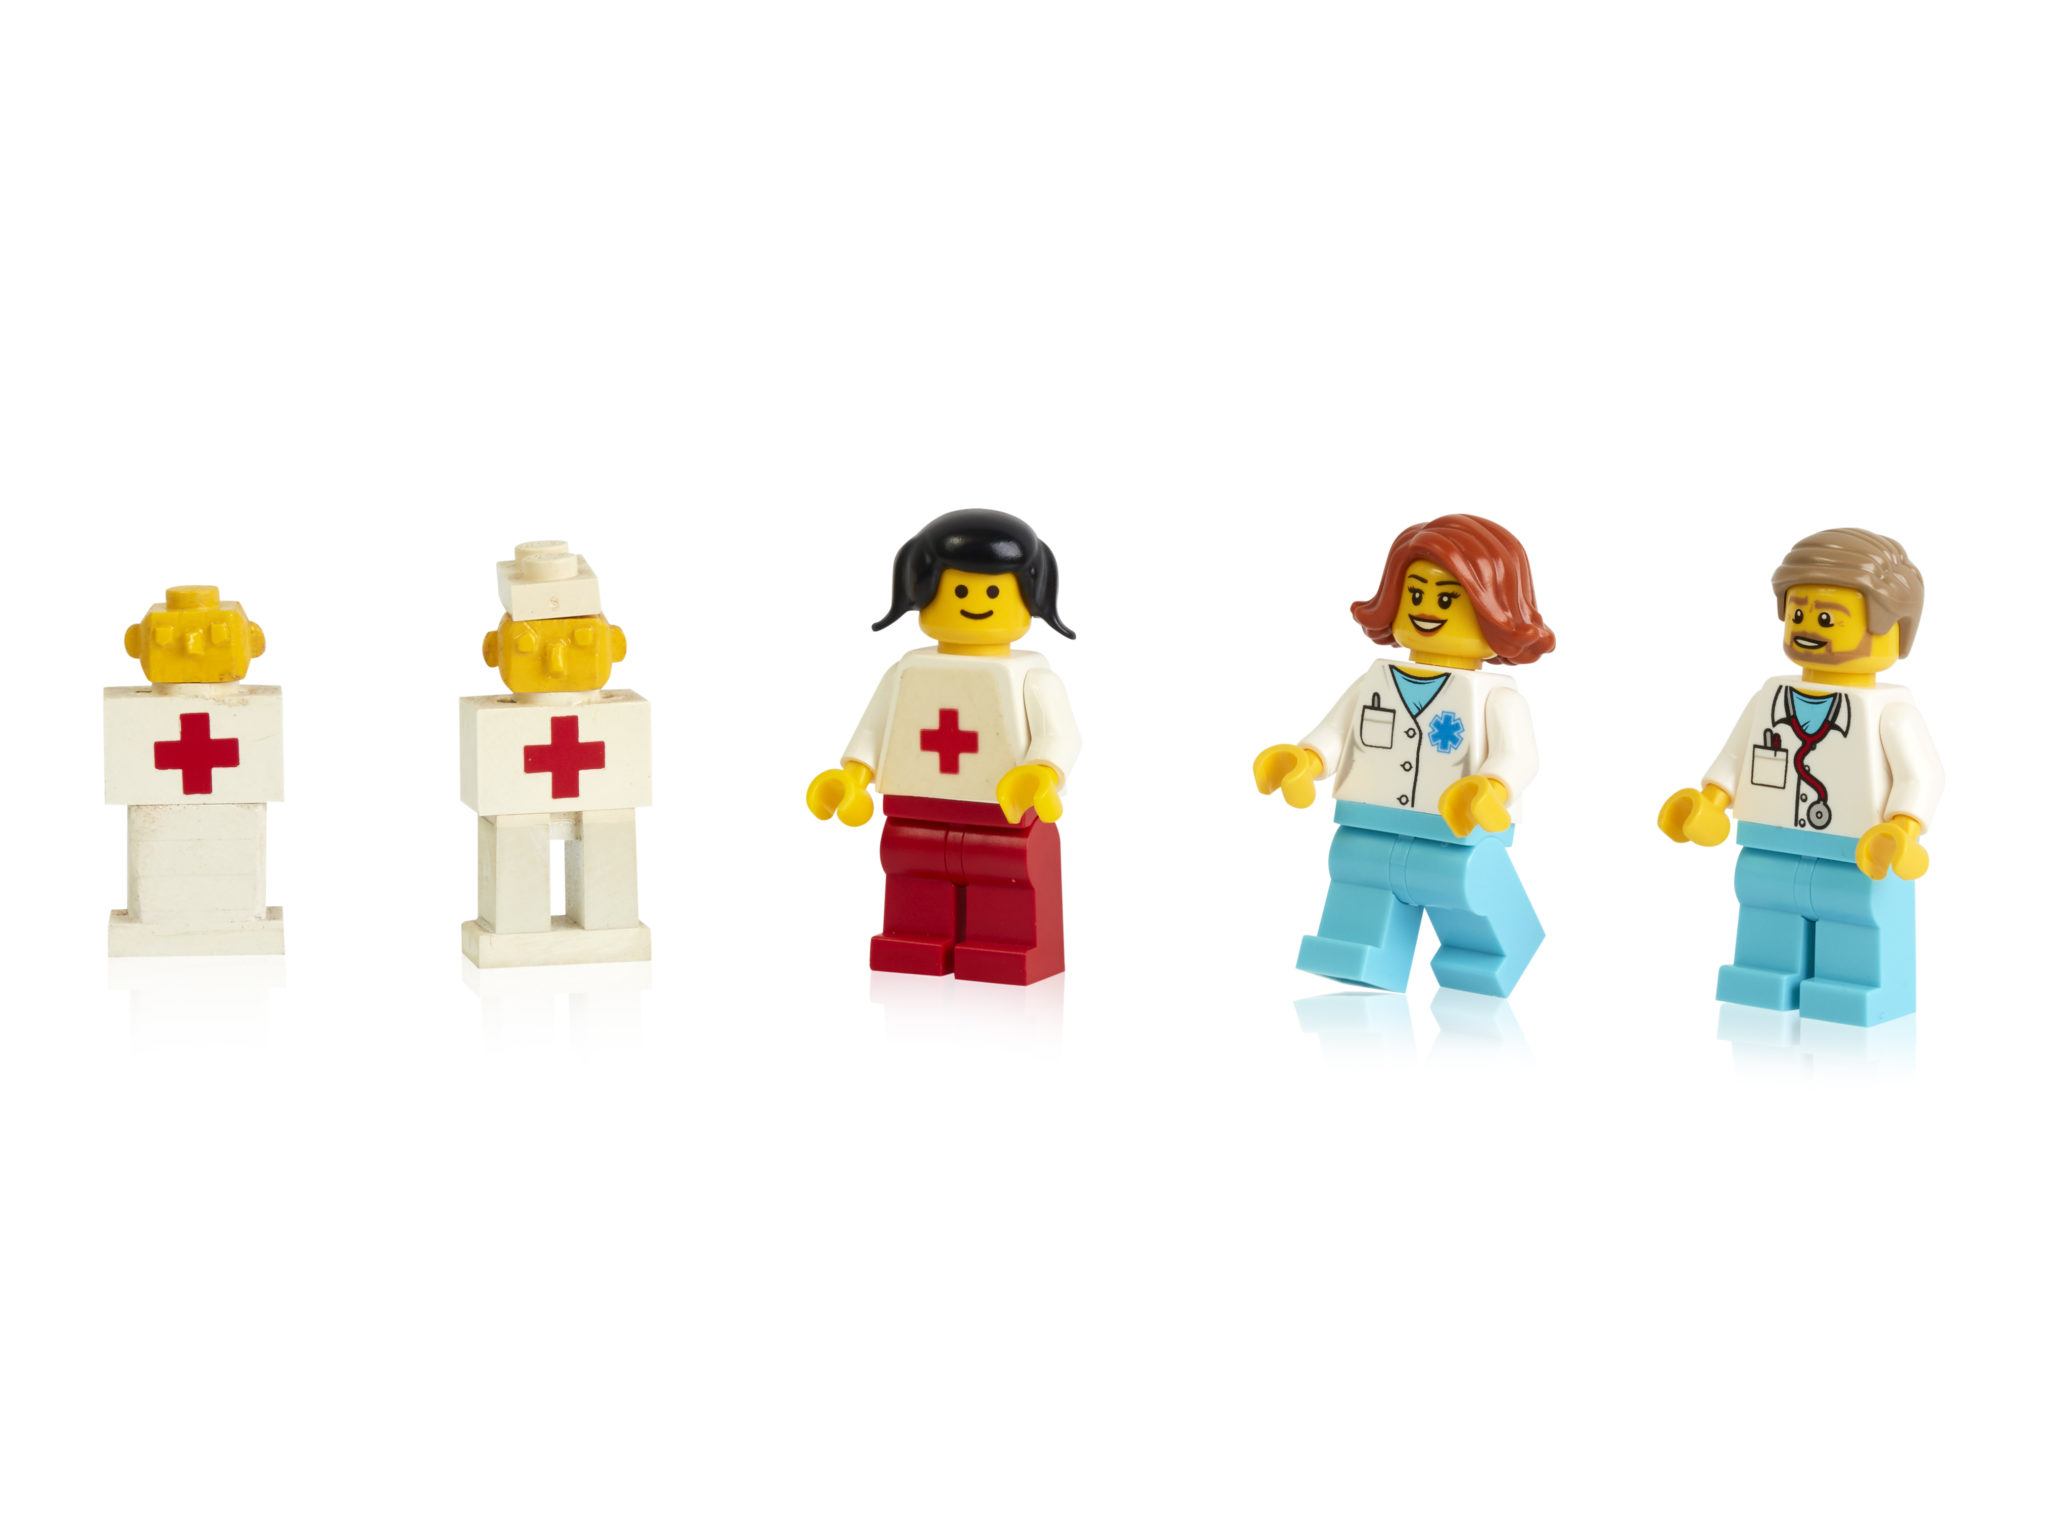 Early prototypes first and more recent minifigure doctors 40-lecie minifigurek LEGO: jak zmieniały się na przestrzeni lat?